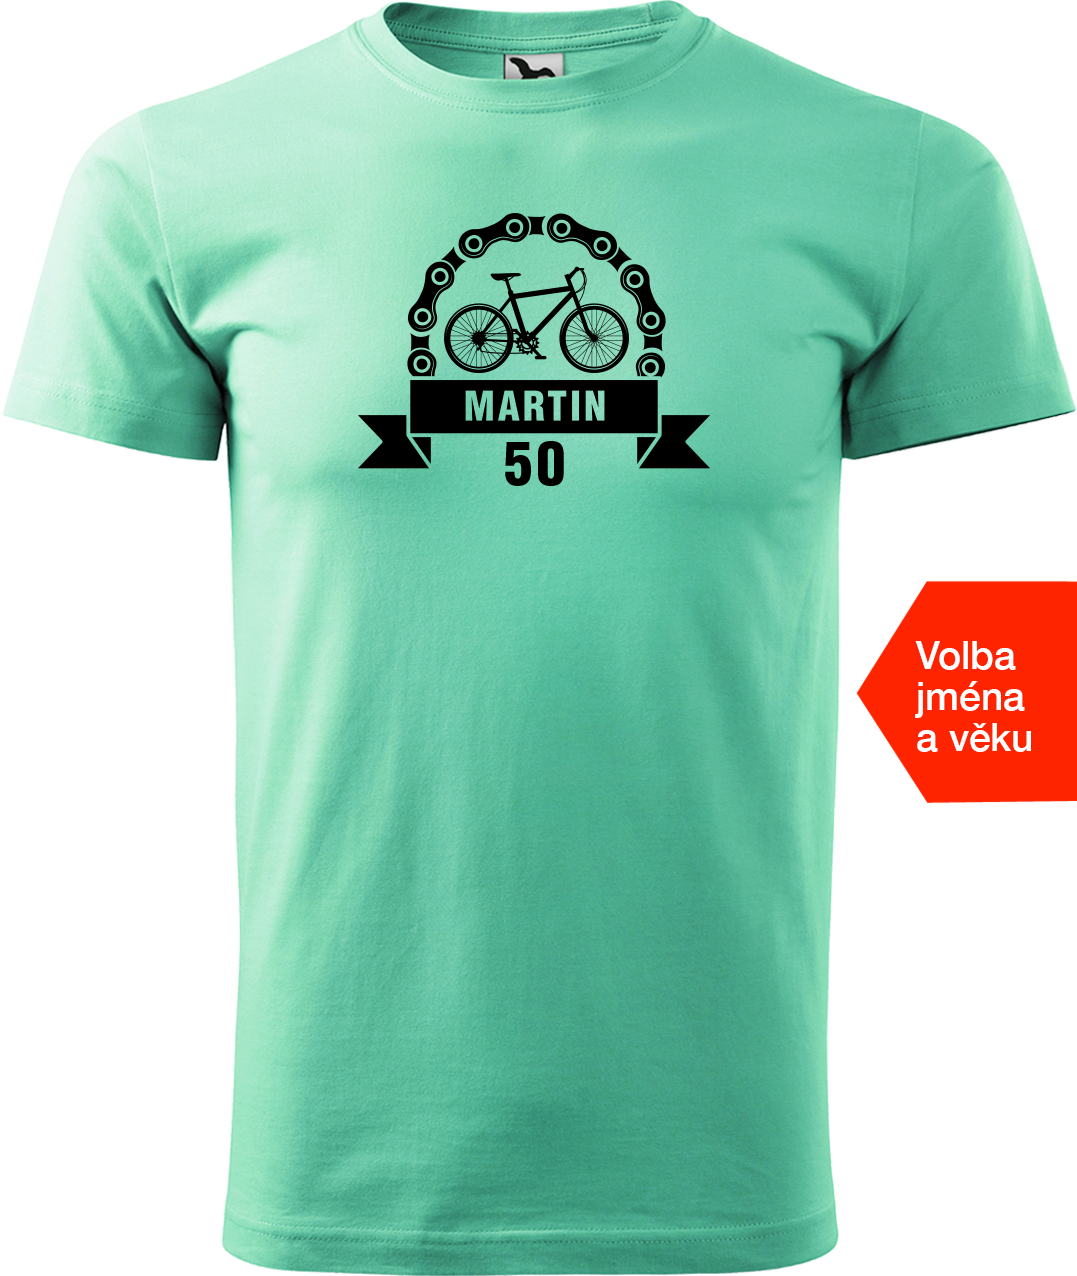 Pánské tričko pro cyklistu se jménem a věkem - Blahopřání Velikost: XL, Barva: Mátová (95)